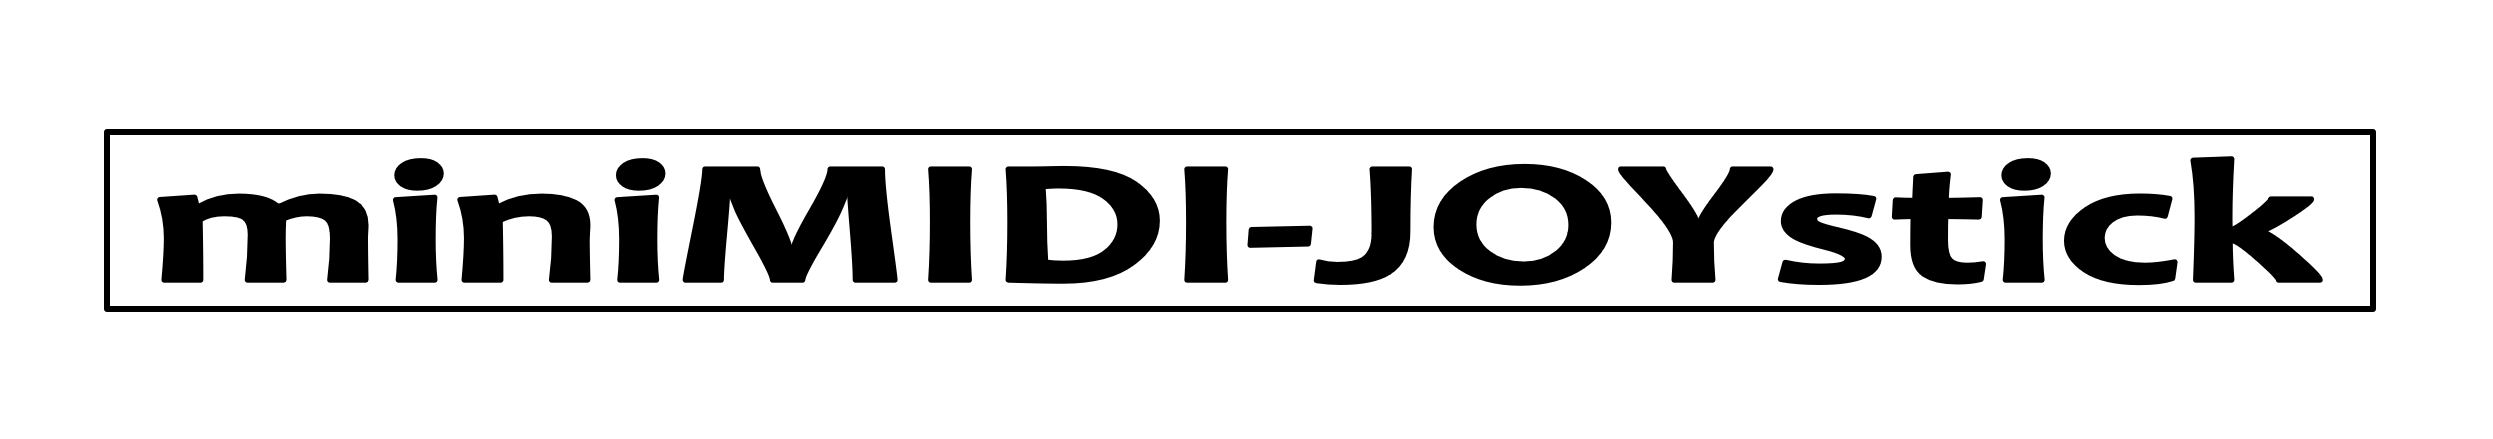 miniMIDI JOYstick  Logo